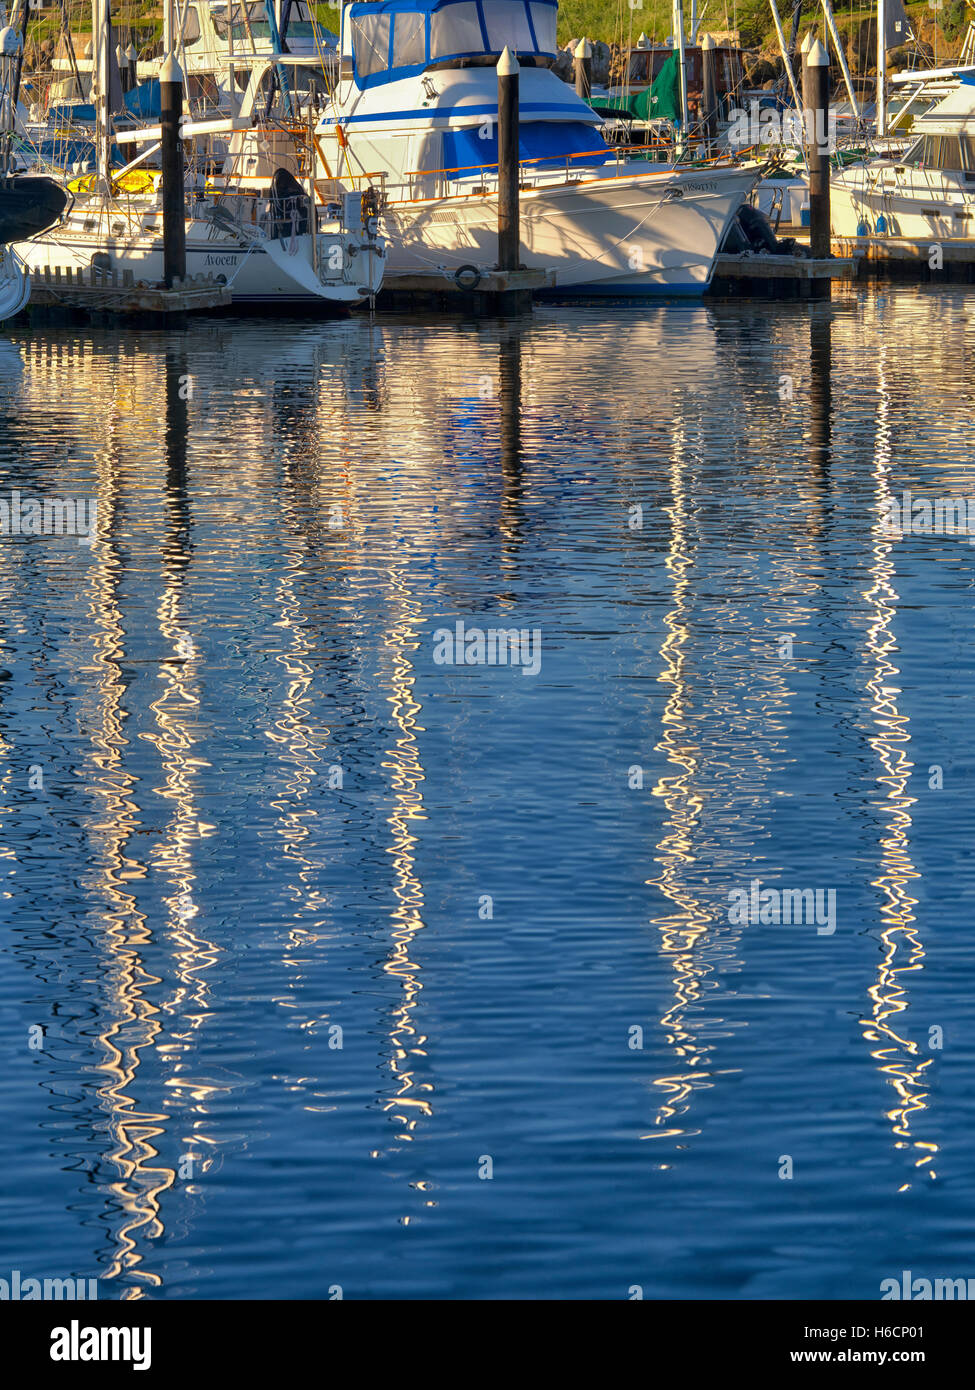 Reflected sailing masts and boats at Monterey Harbor and Marina, California Stock Photo